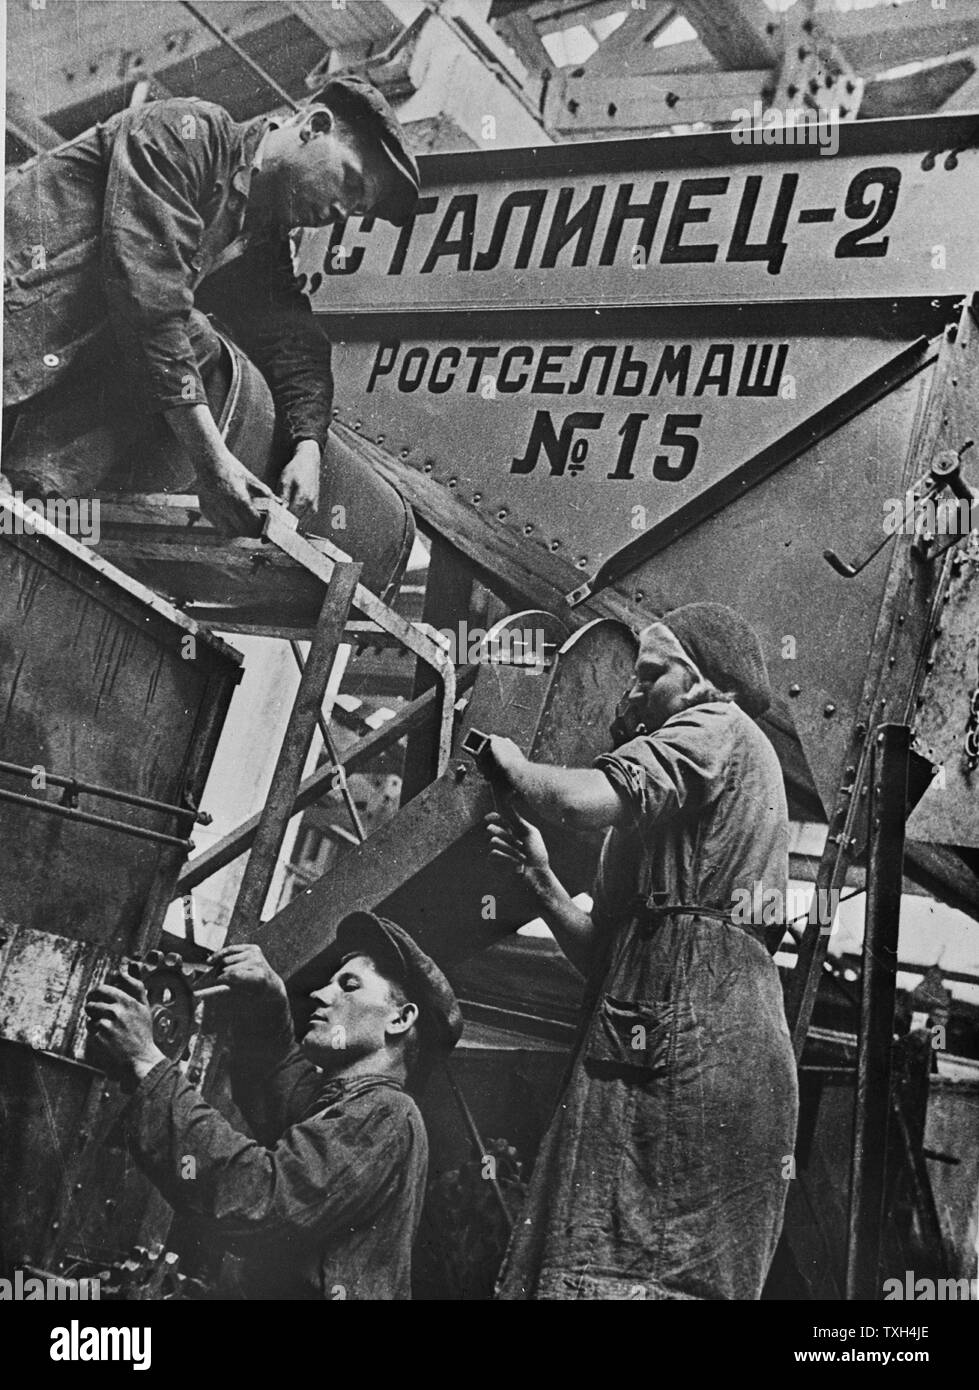 Les hommes et les femmes travailleurs dans une usine de moissonneuses-batteuses Rostov-sur-Don, URSS - 1930-1940 Banque D'Images